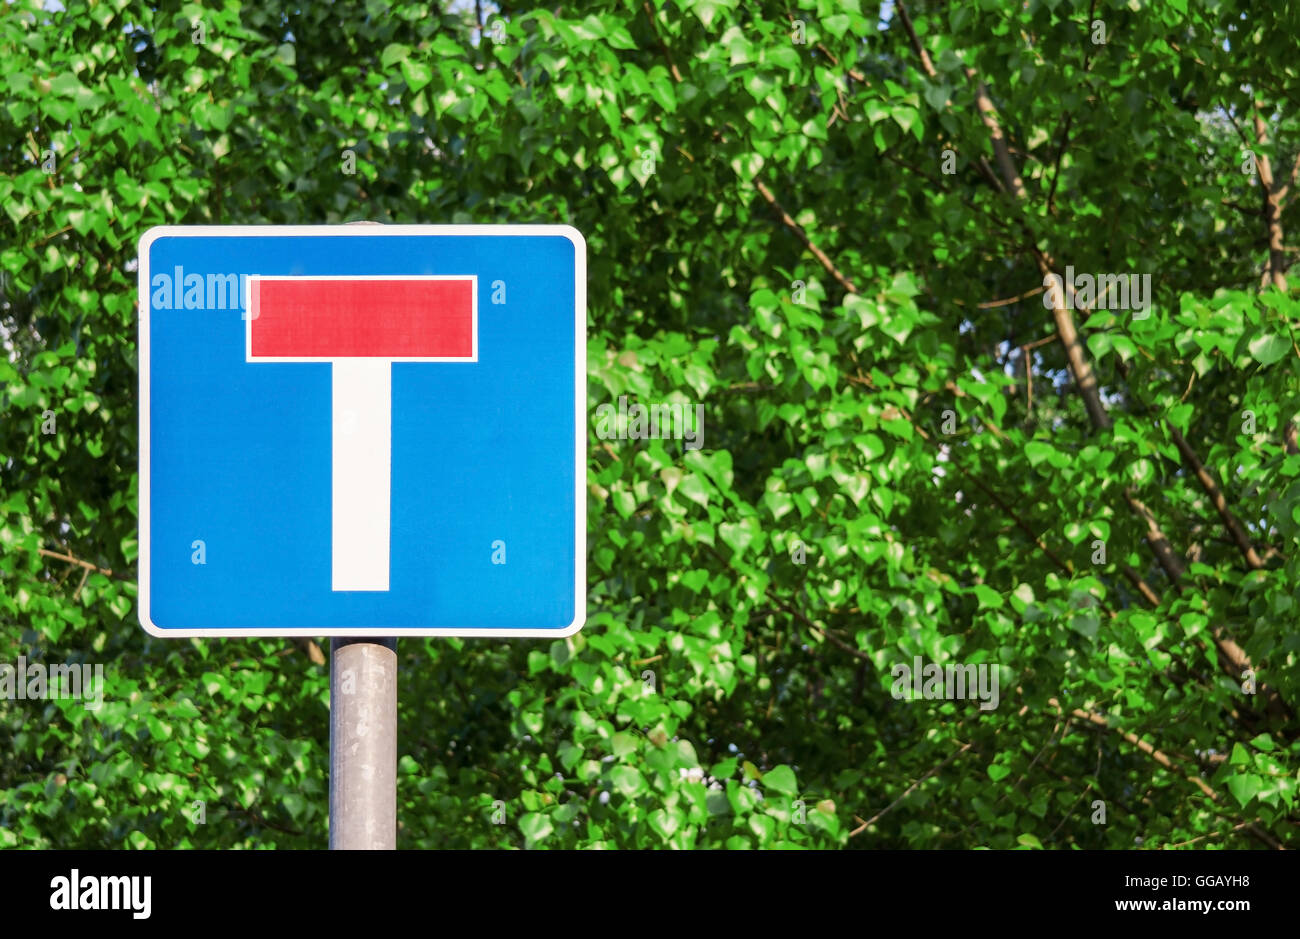 Sackgasse Verkehrszeichen in grünen Hintergrund Stockfotografie - Alamy